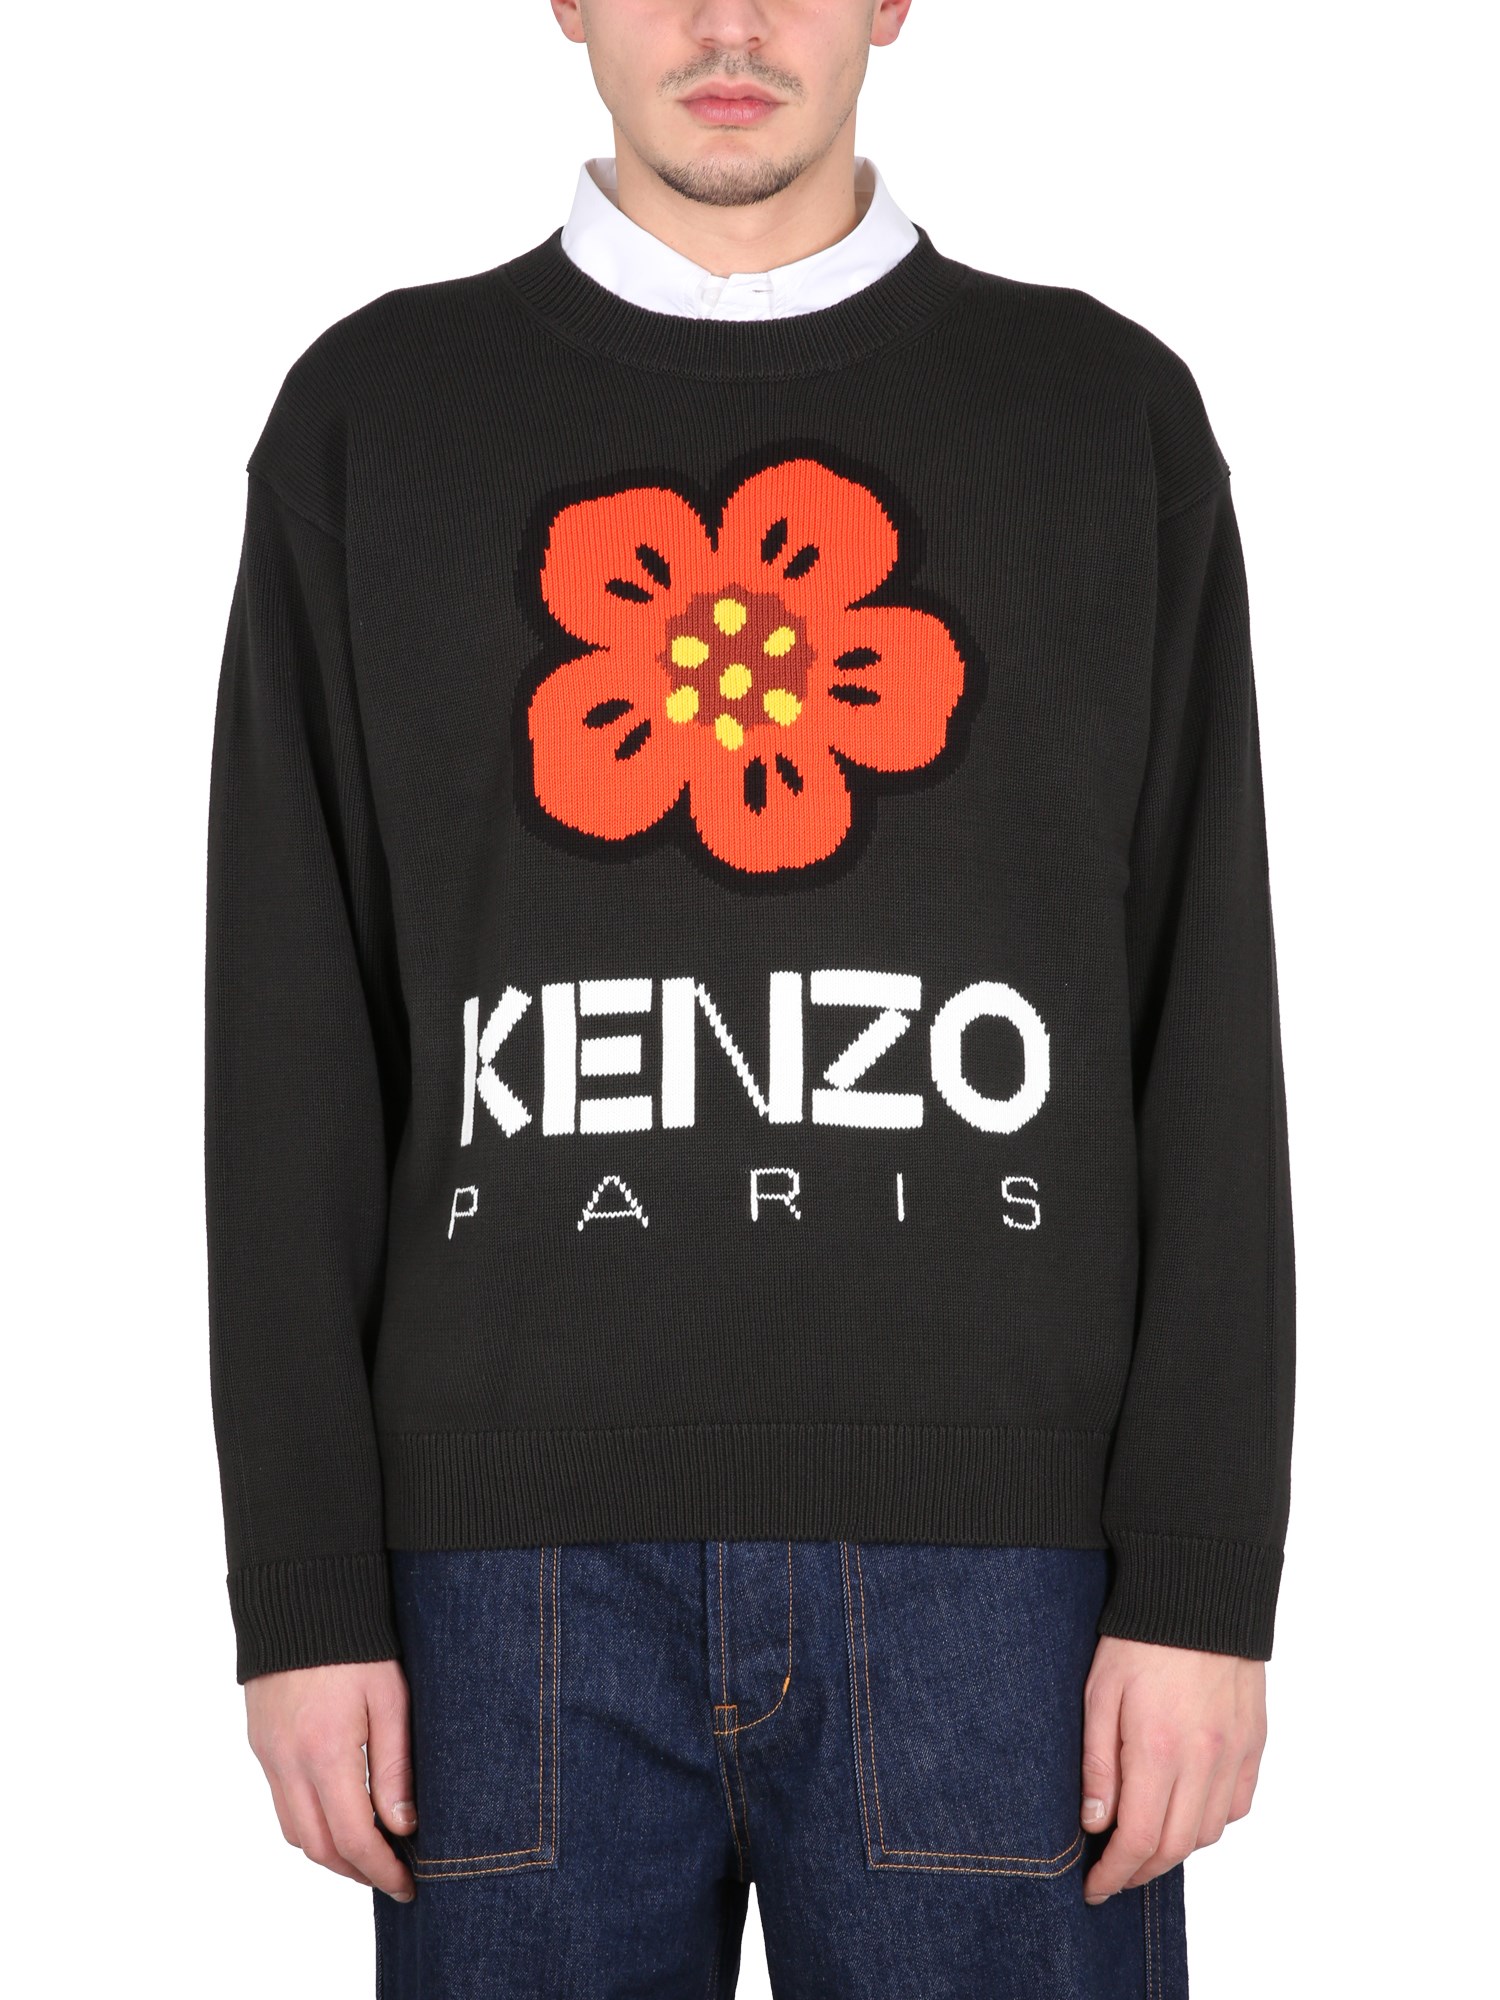 kenzo "boke flower" jersey